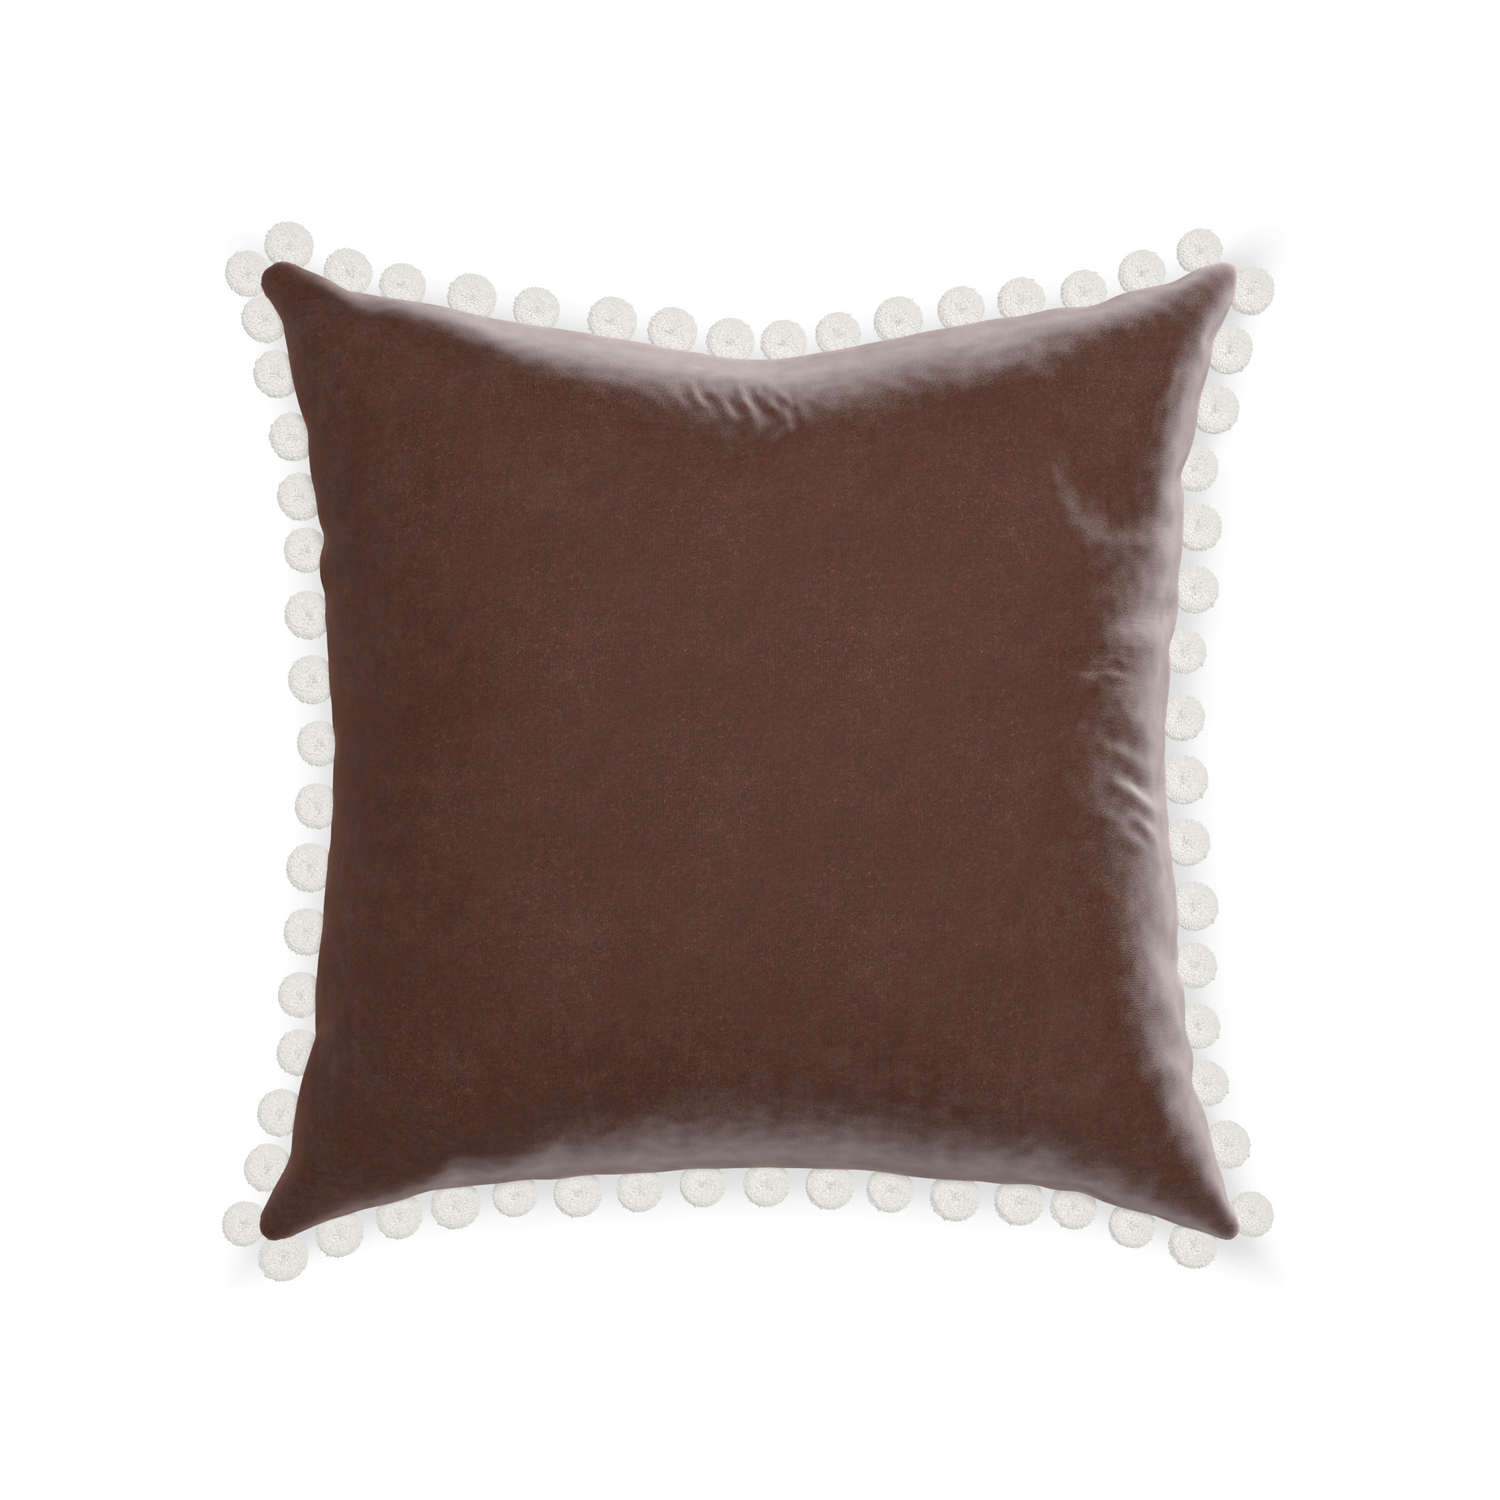 square brown velvet pillow with white pom poms